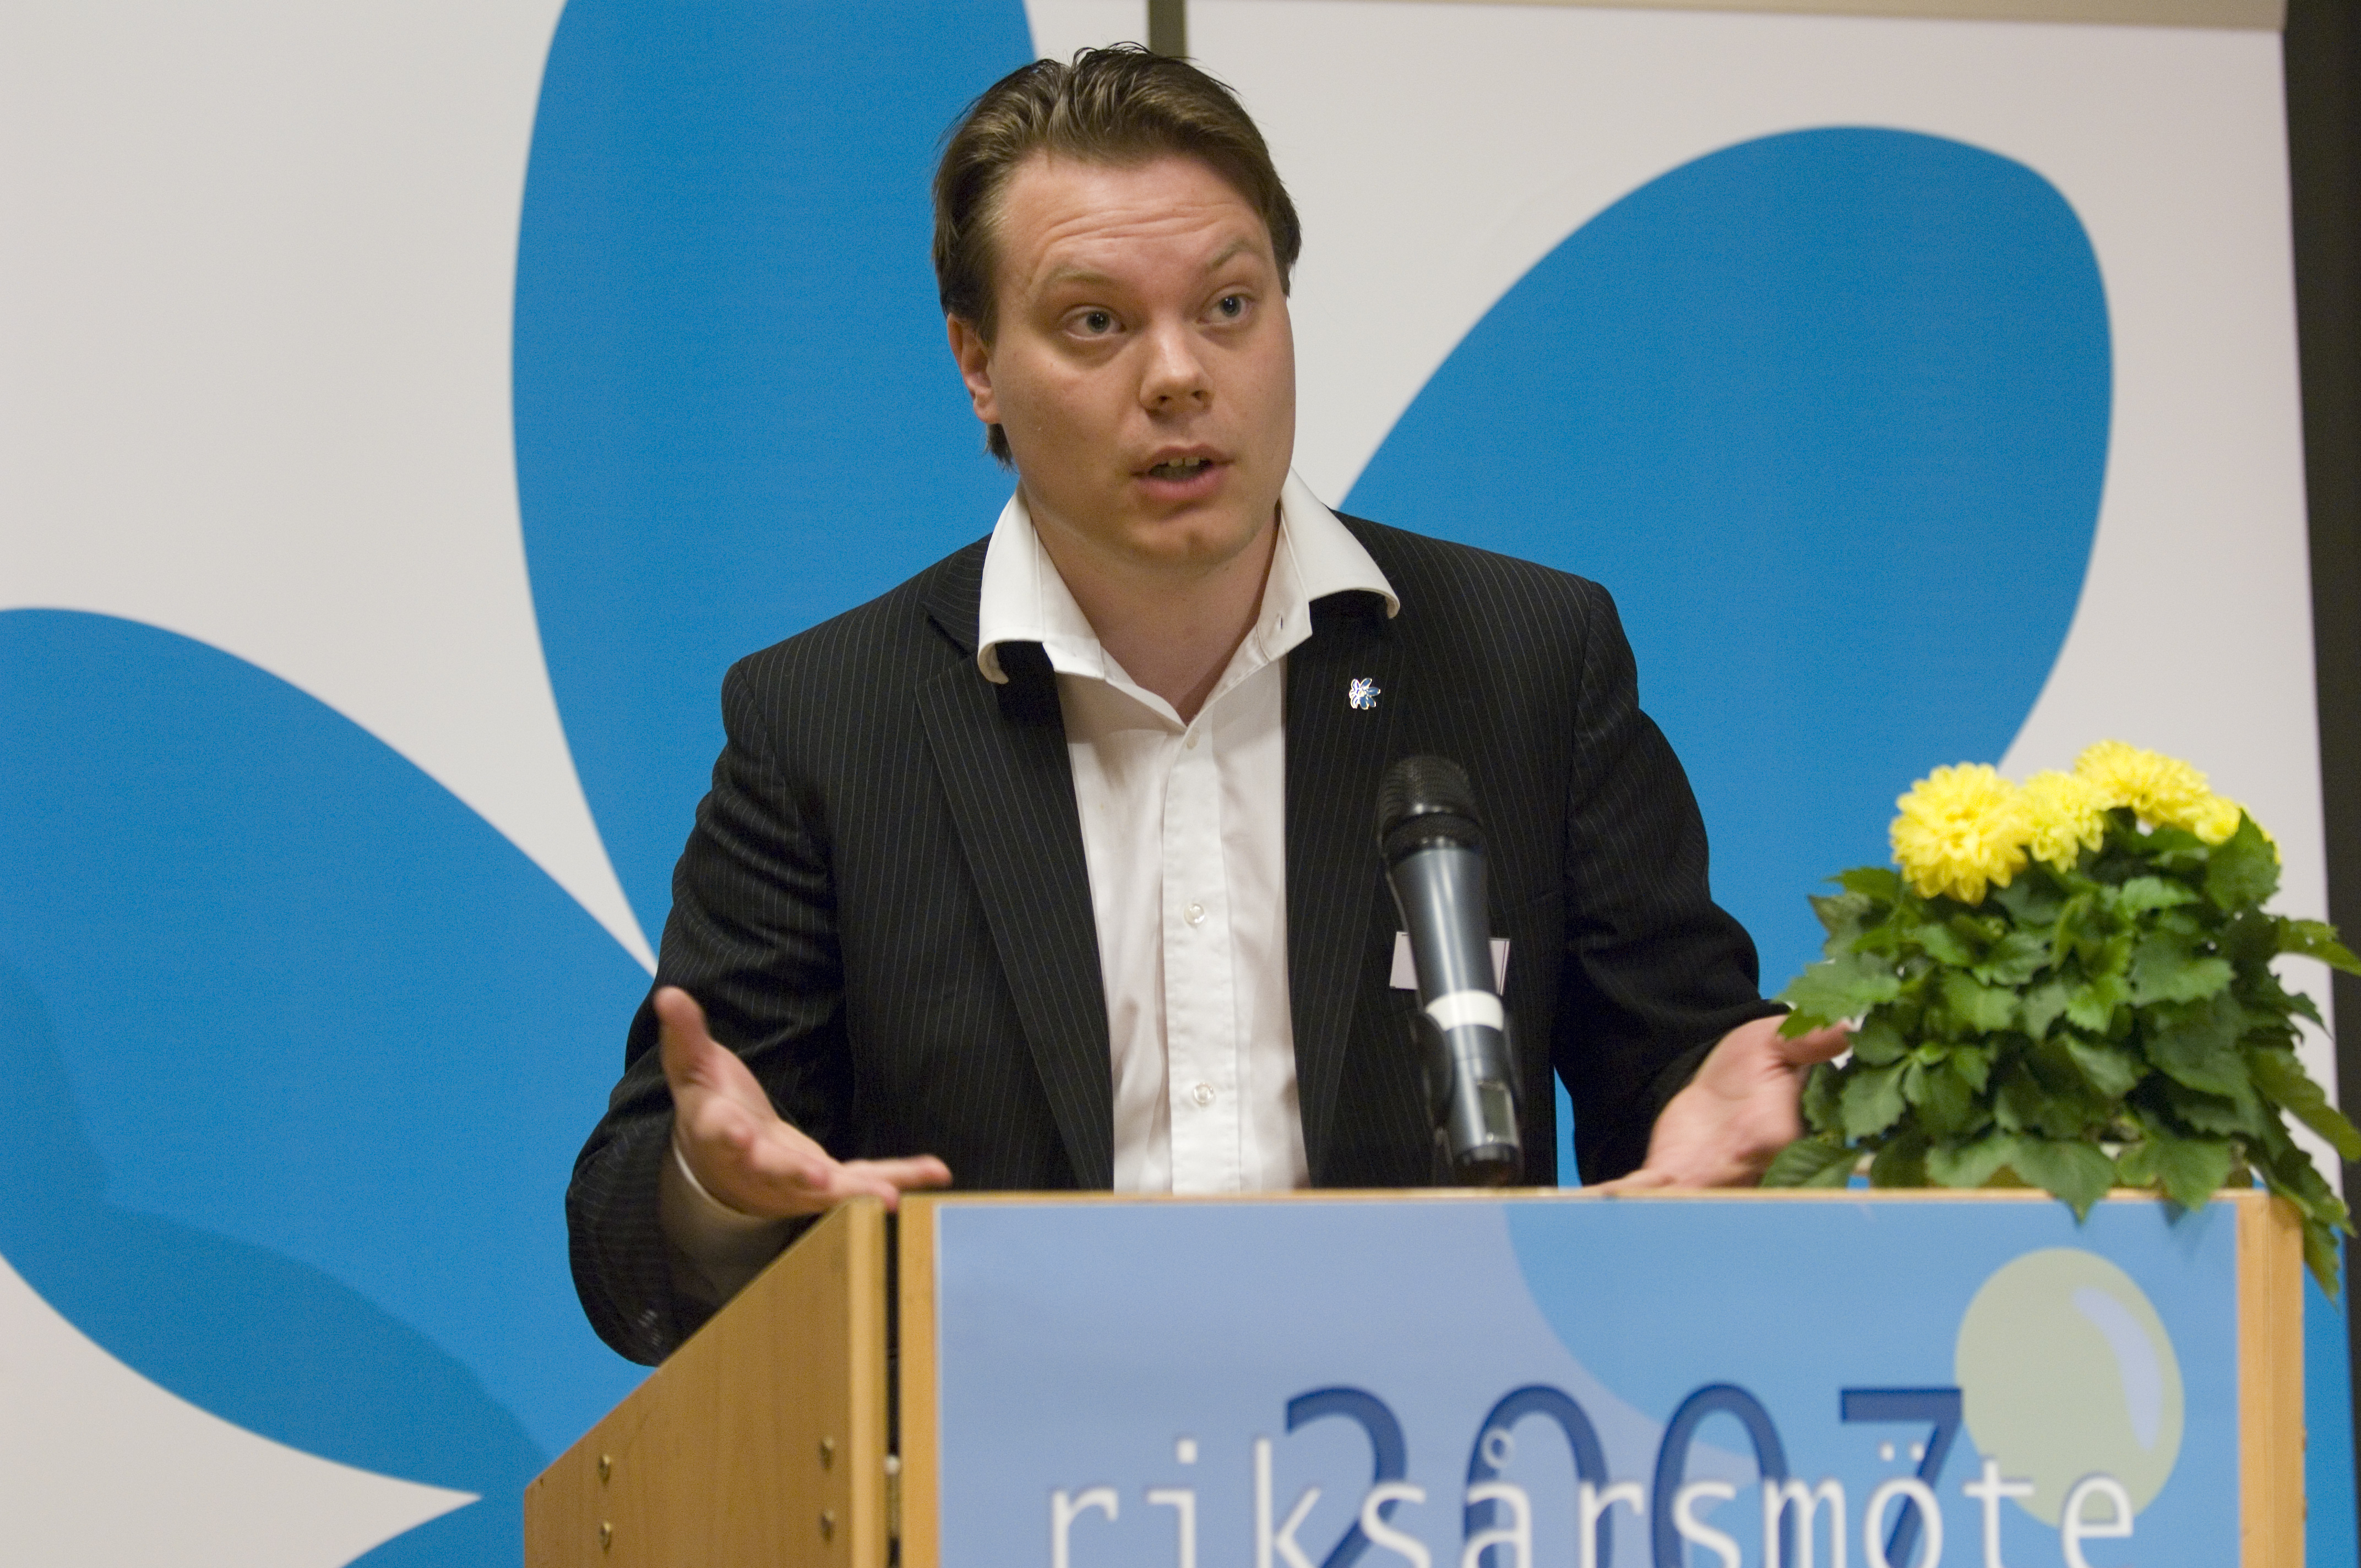 Politik, Martin Kinnunen, Afrosvenskarnas riksförbund, Rasism, Sverigedemokraterna, Jimmie Åkesson